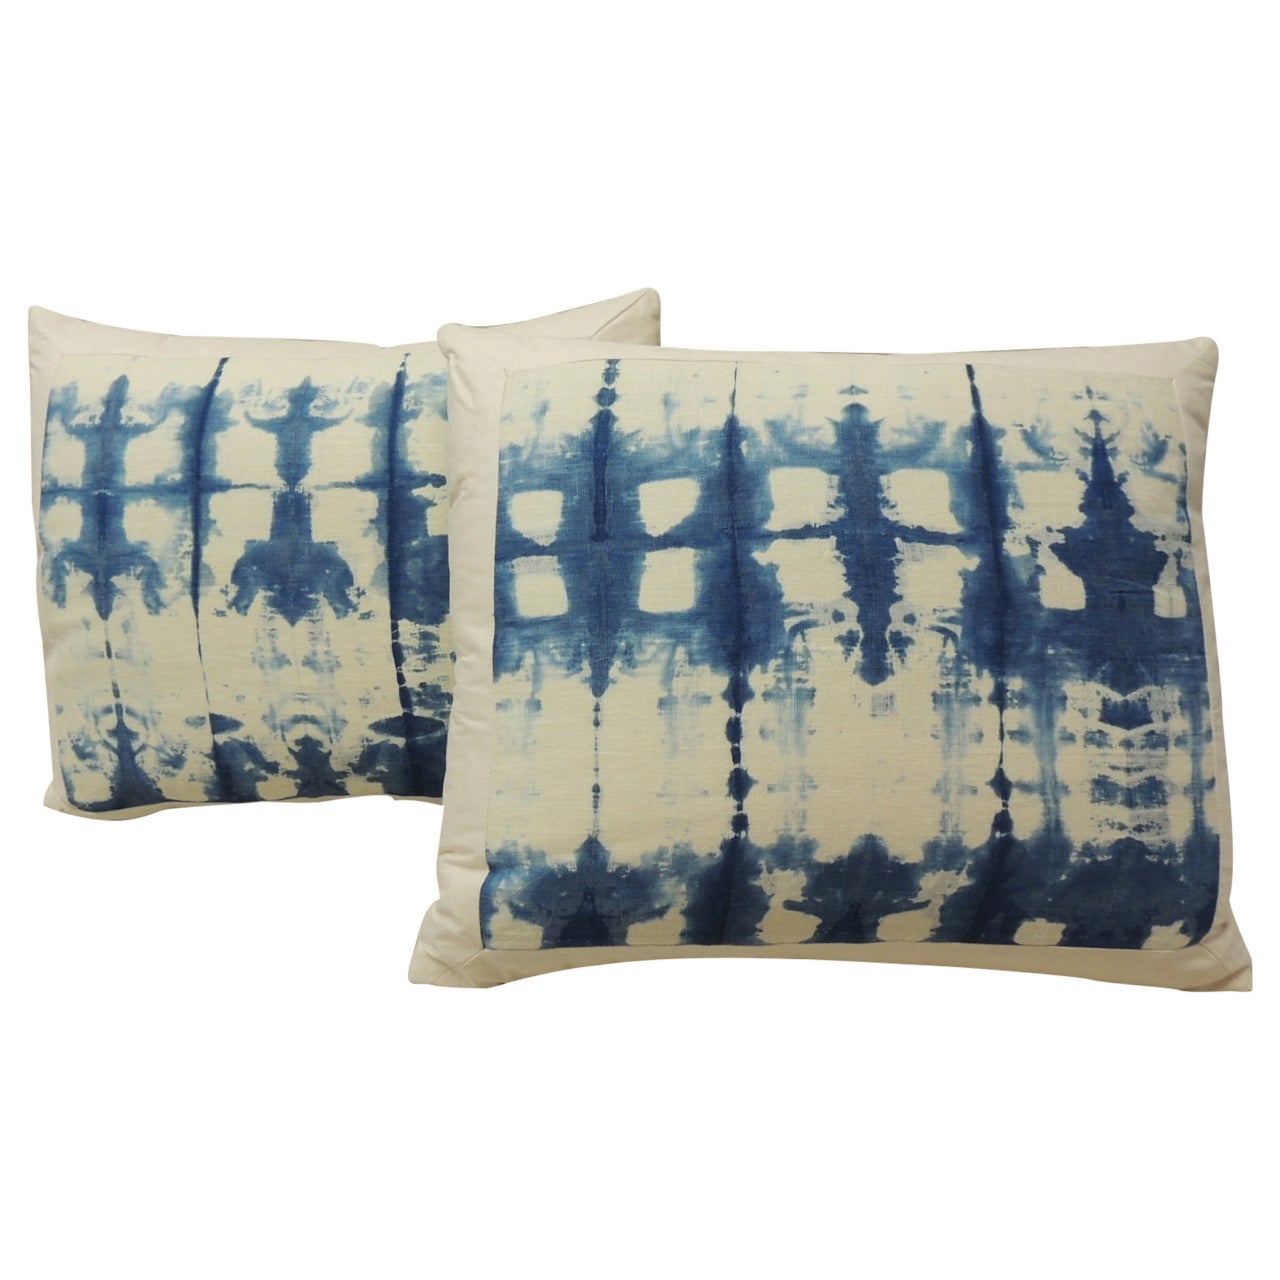 Pair of "Shibori" Blue and White Pillows